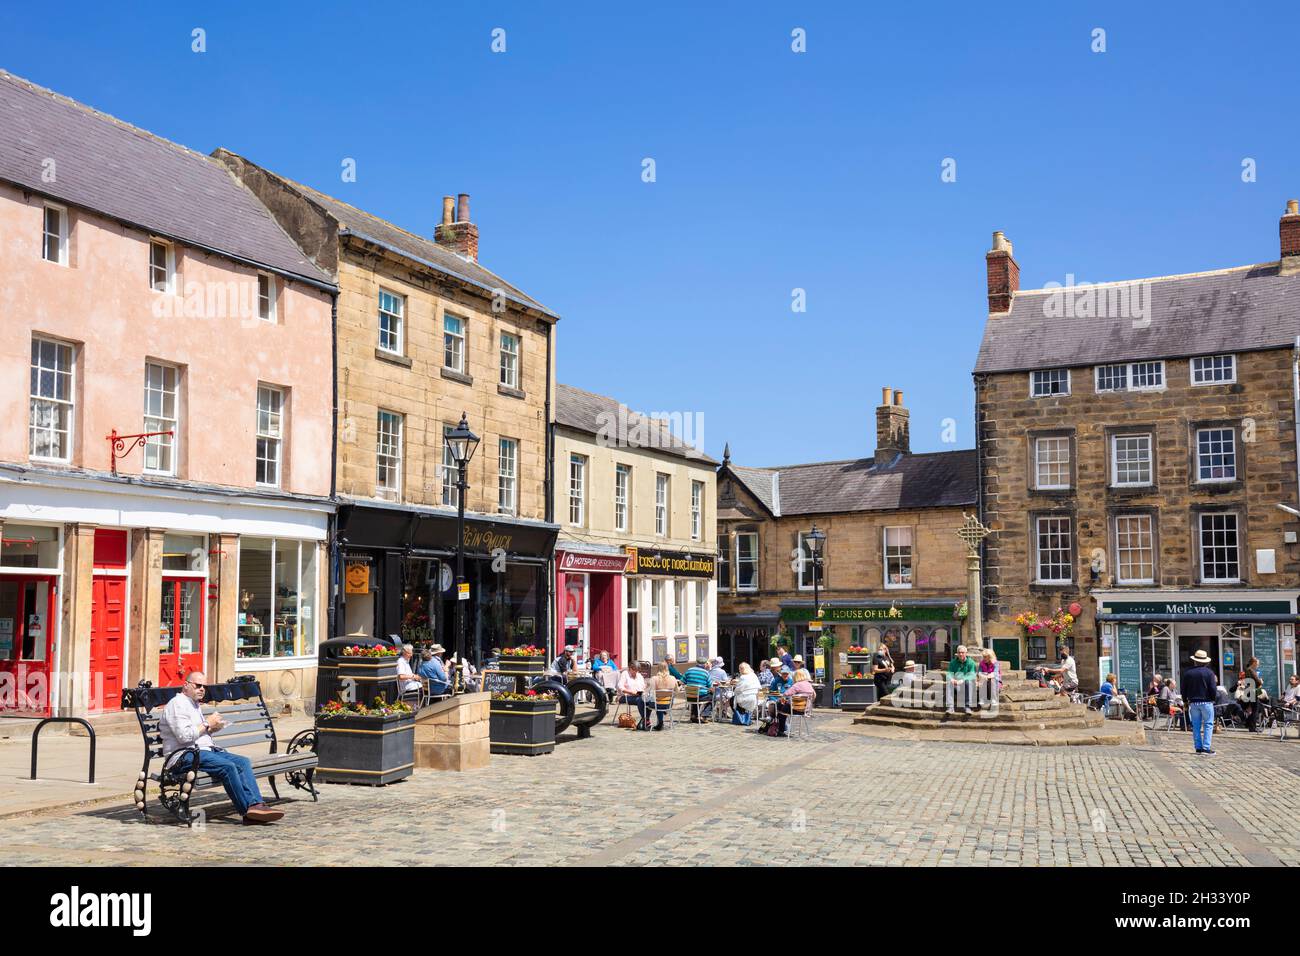 Die Menschen auf dem historischen Marktplatz und dem Markt überqueren das Stadtzentrum von Alnwick Alnwick Northumberland Northumbria England GB Europa Stockfoto